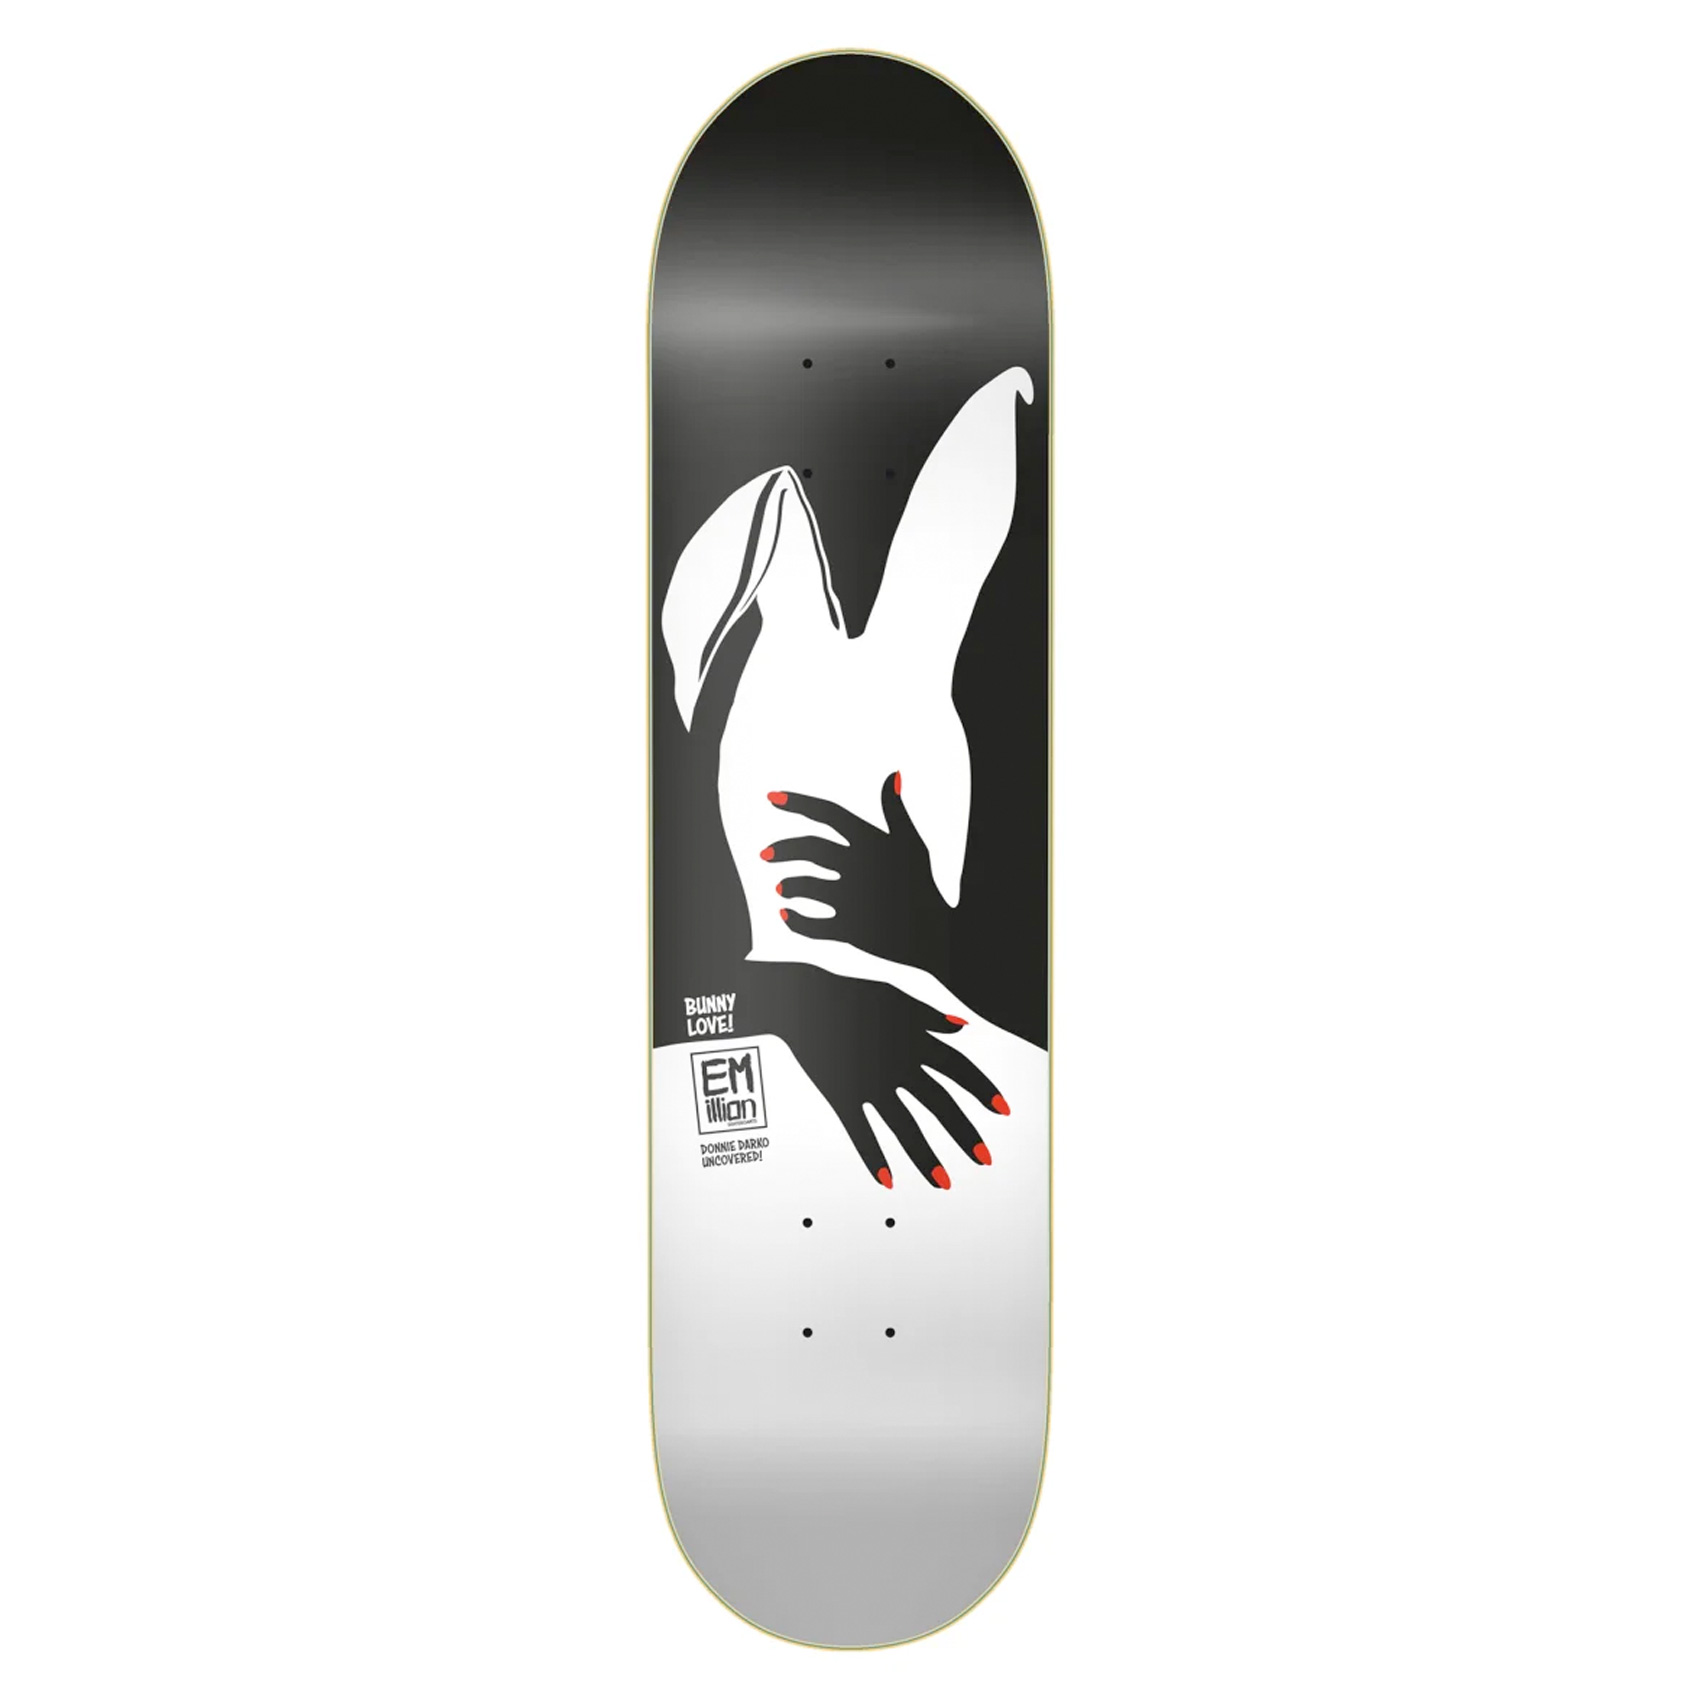 Emillion Skateboard Deck Bunny Love 8.0" (black bunny)